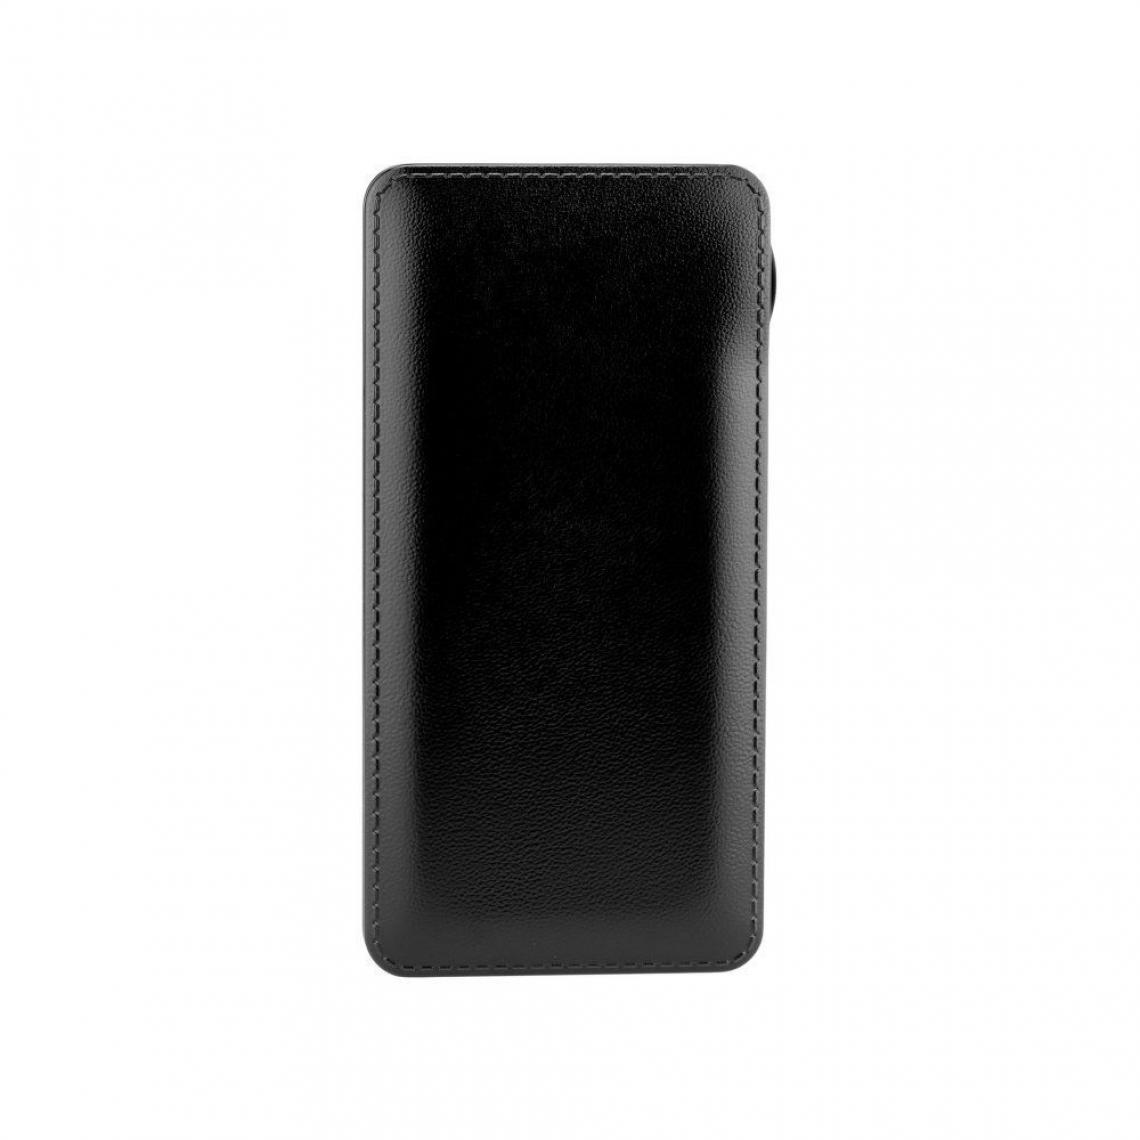 Ozzzo - Chargeur batterie externe 20000 mAh powerbank ozzzo noir pour UMiDIGI Power 3 - Autres accessoires smartphone